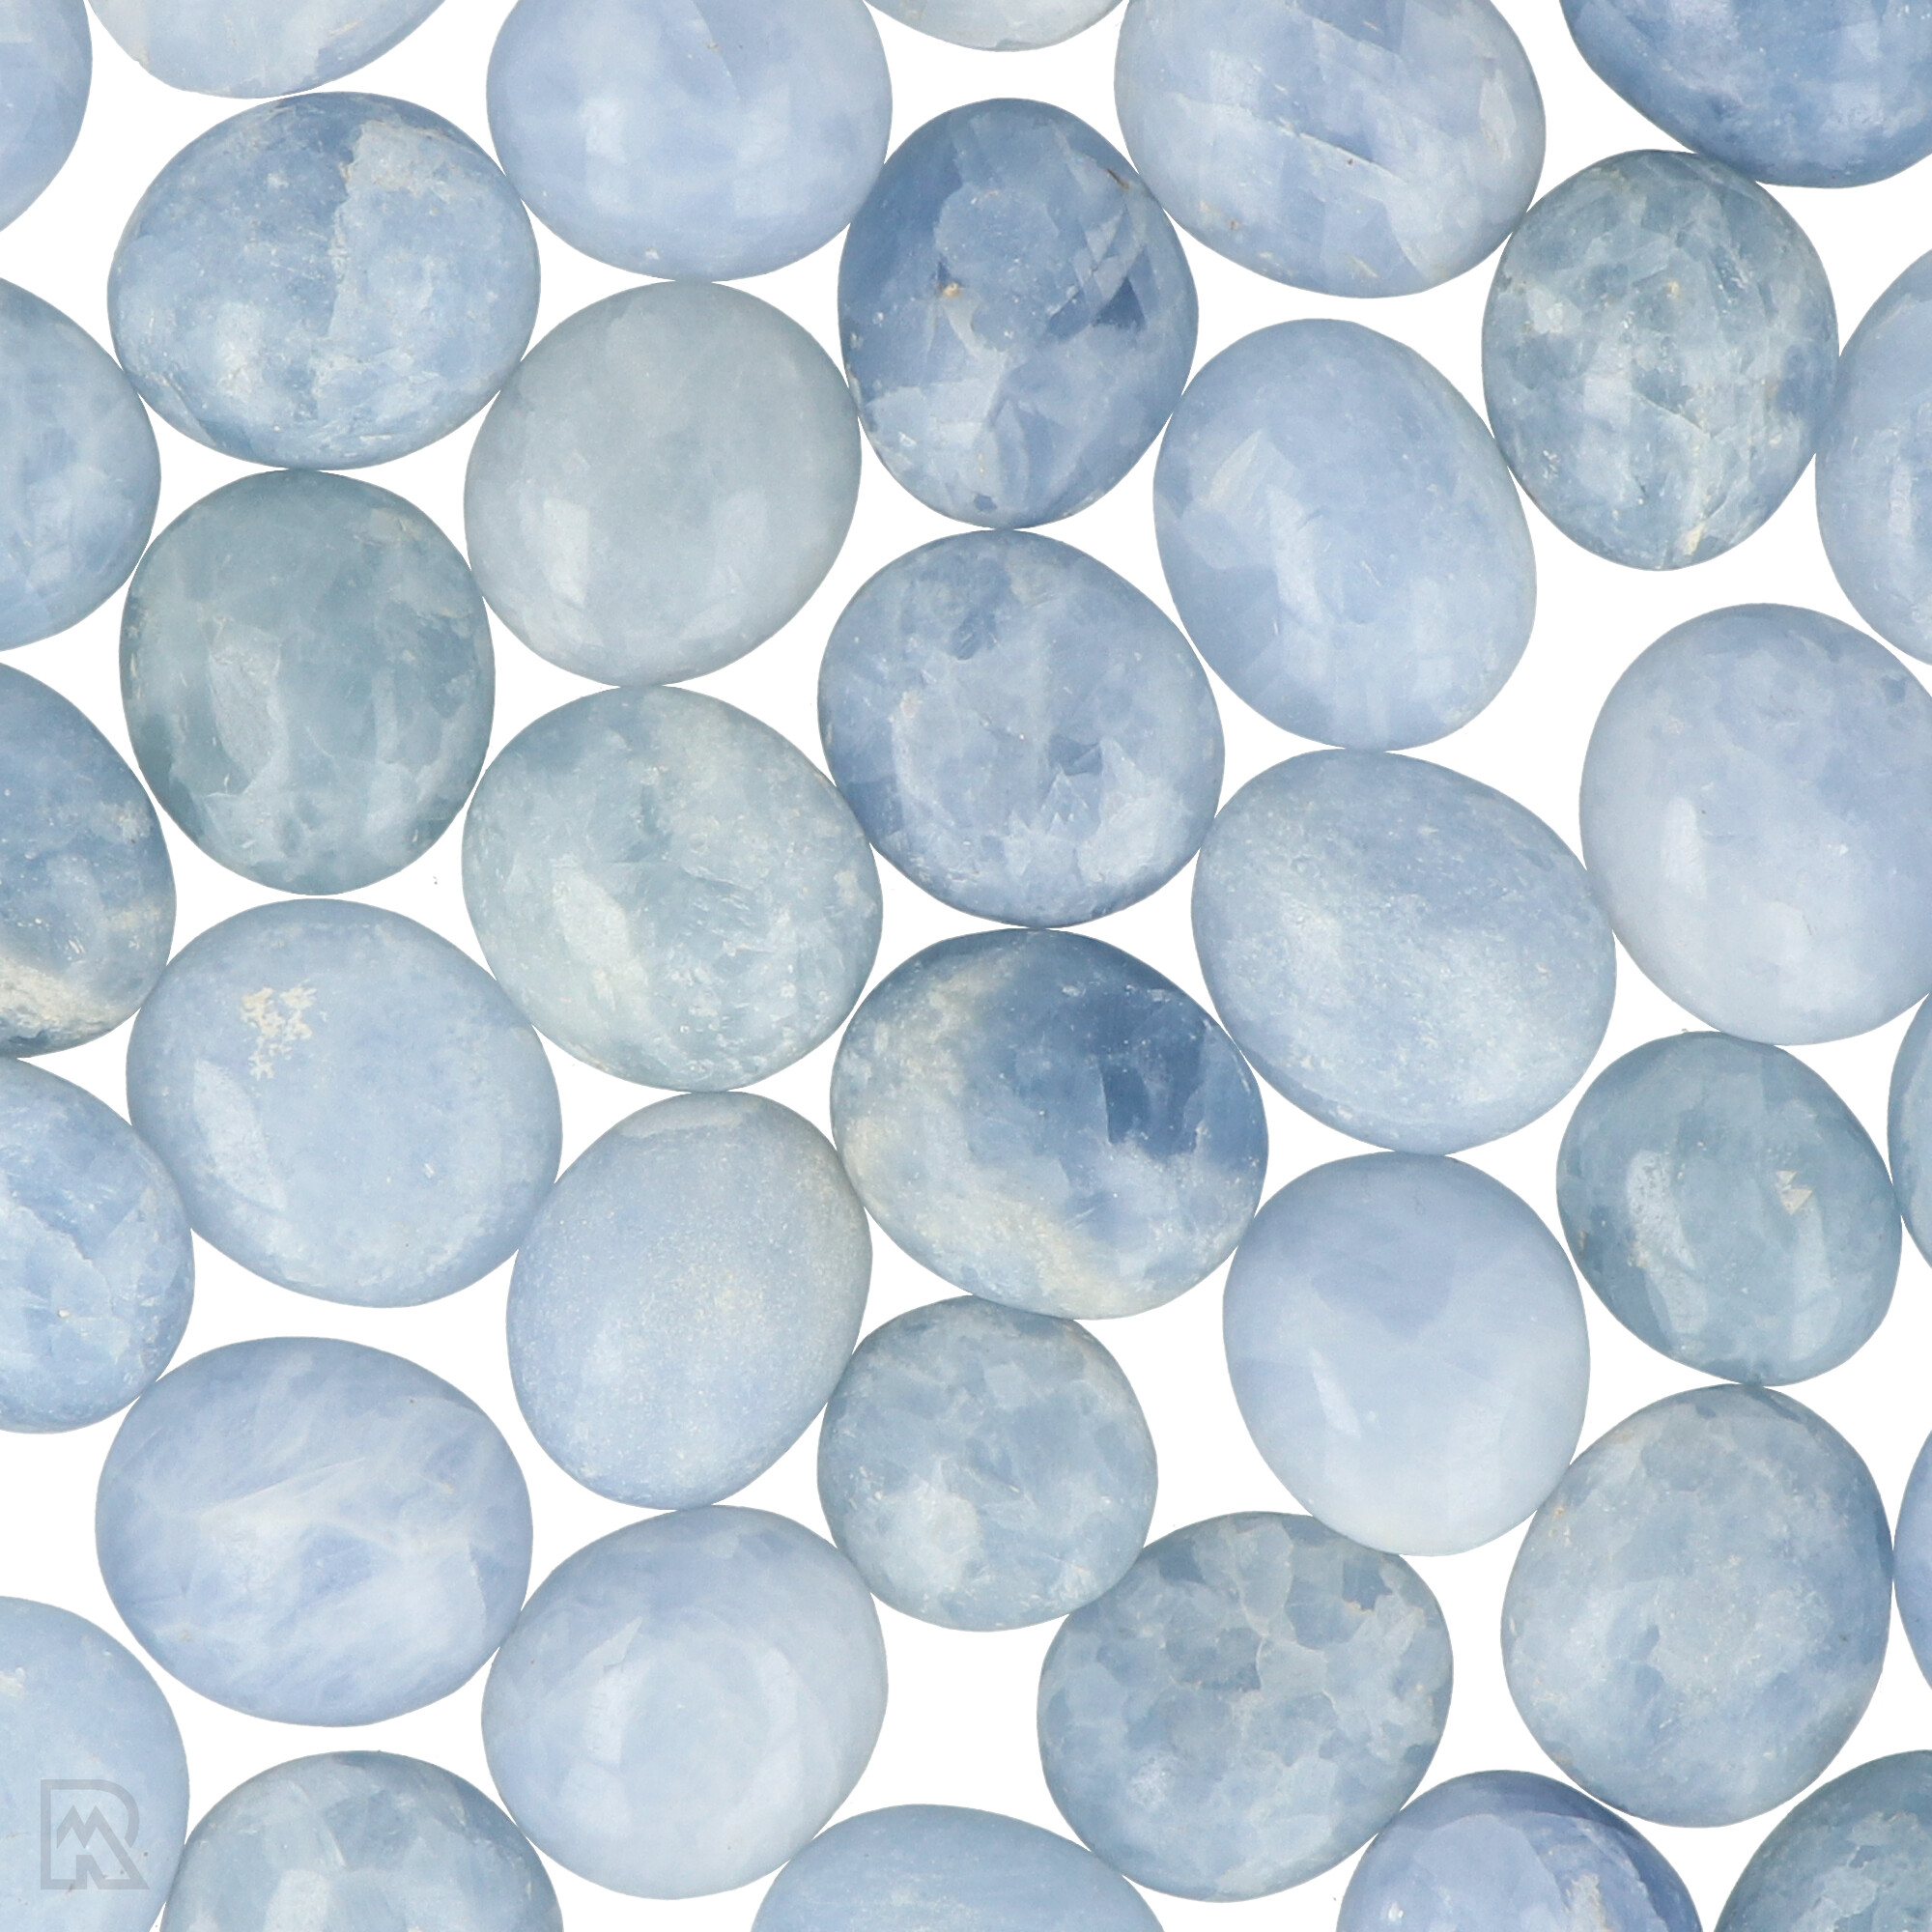 blue-calcite-sackstones-madagaskar-zoom